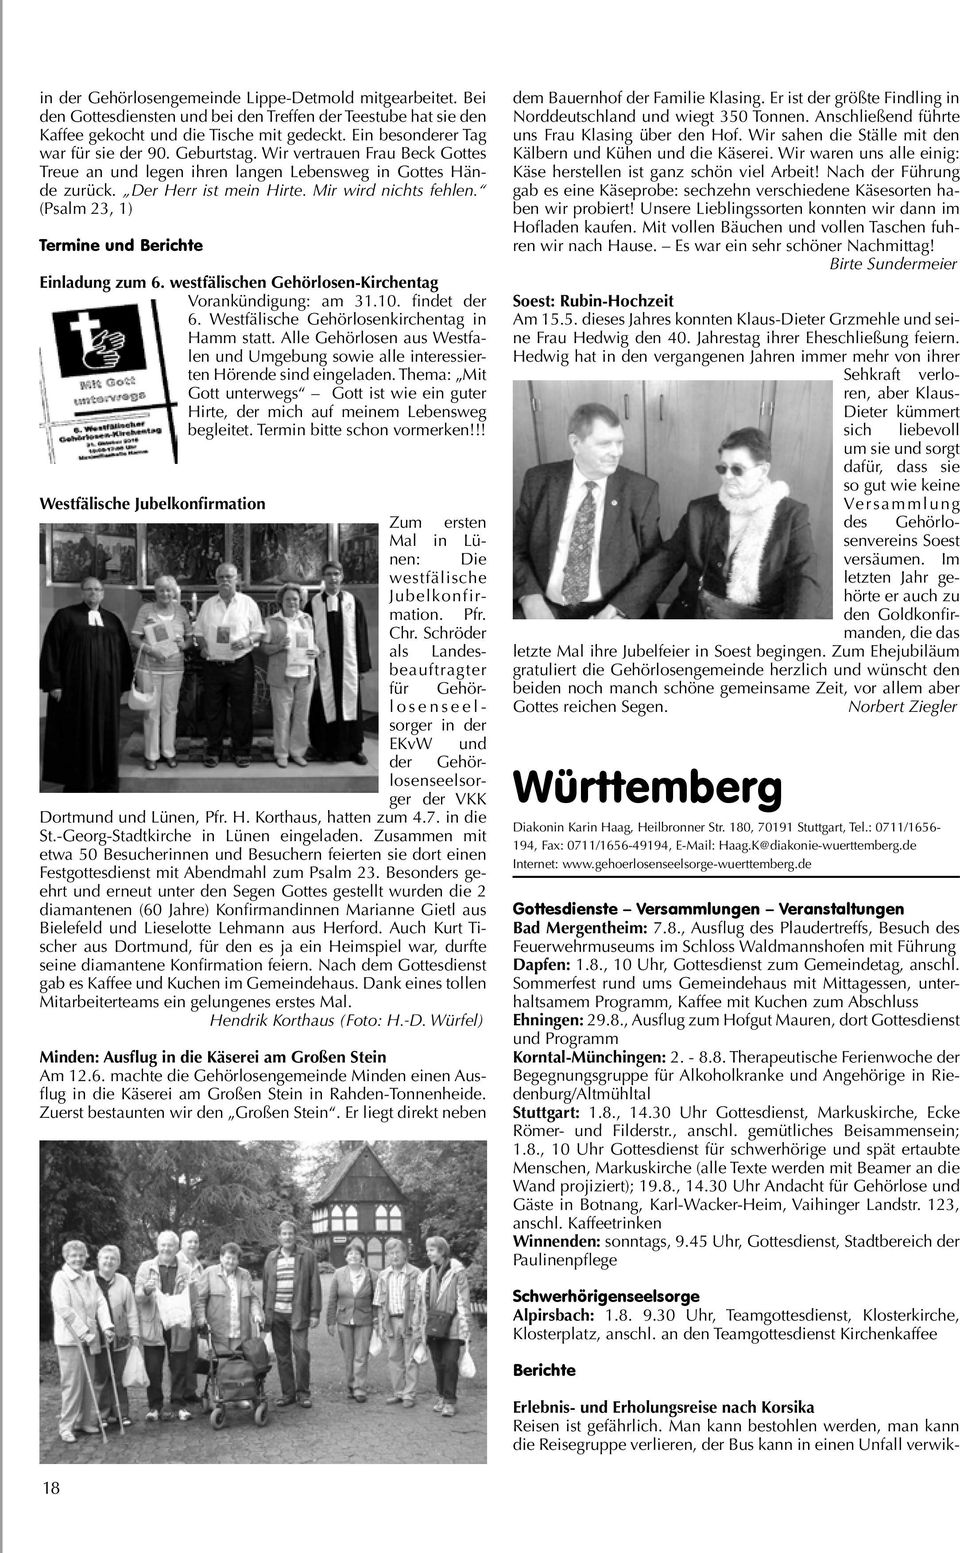 (Psalm 23, 1) Termine und Berichte Einladung zum 6. westfälischen Gehörlosen-Kirchentag Vorankündigung: am 31.10. findet der 6. Westfälische Gehörlosenkirchentag in Hamm statt.